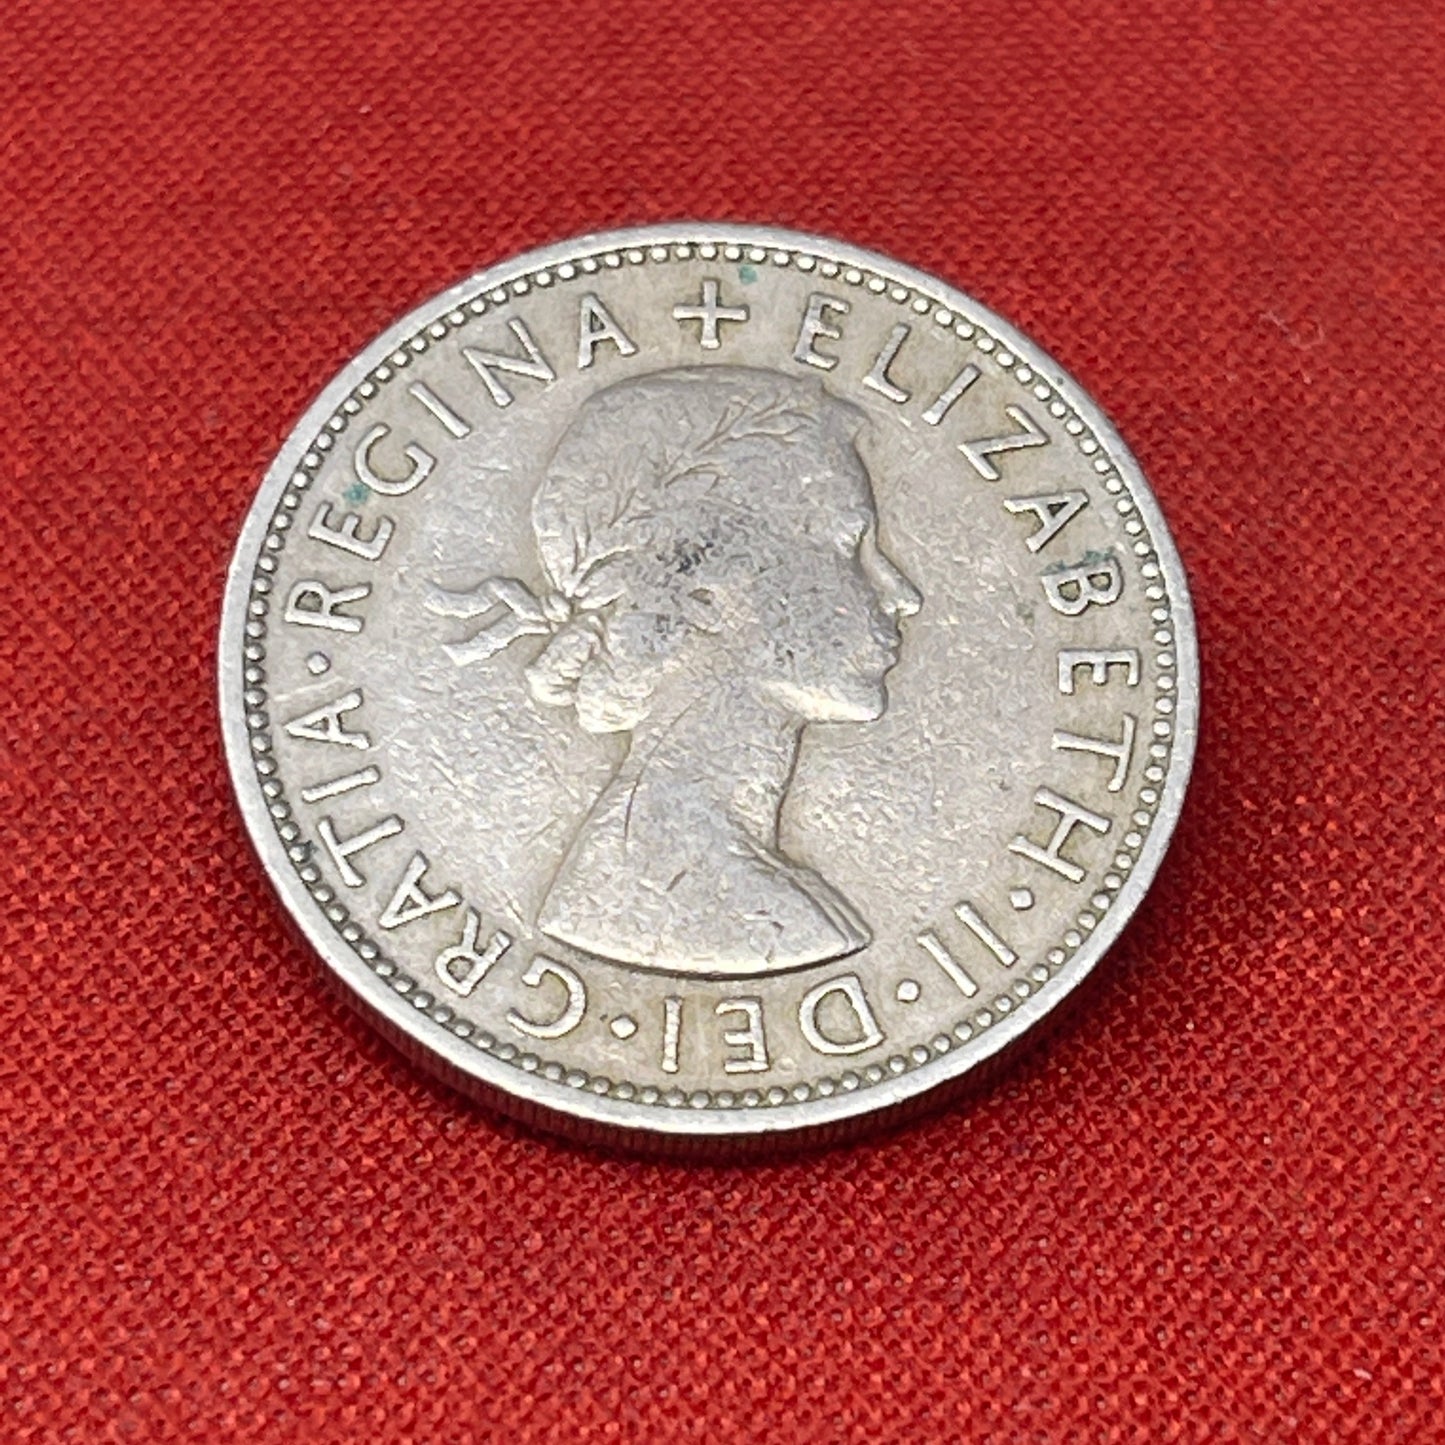 Queen Elizabeth II Two Shilling 1957